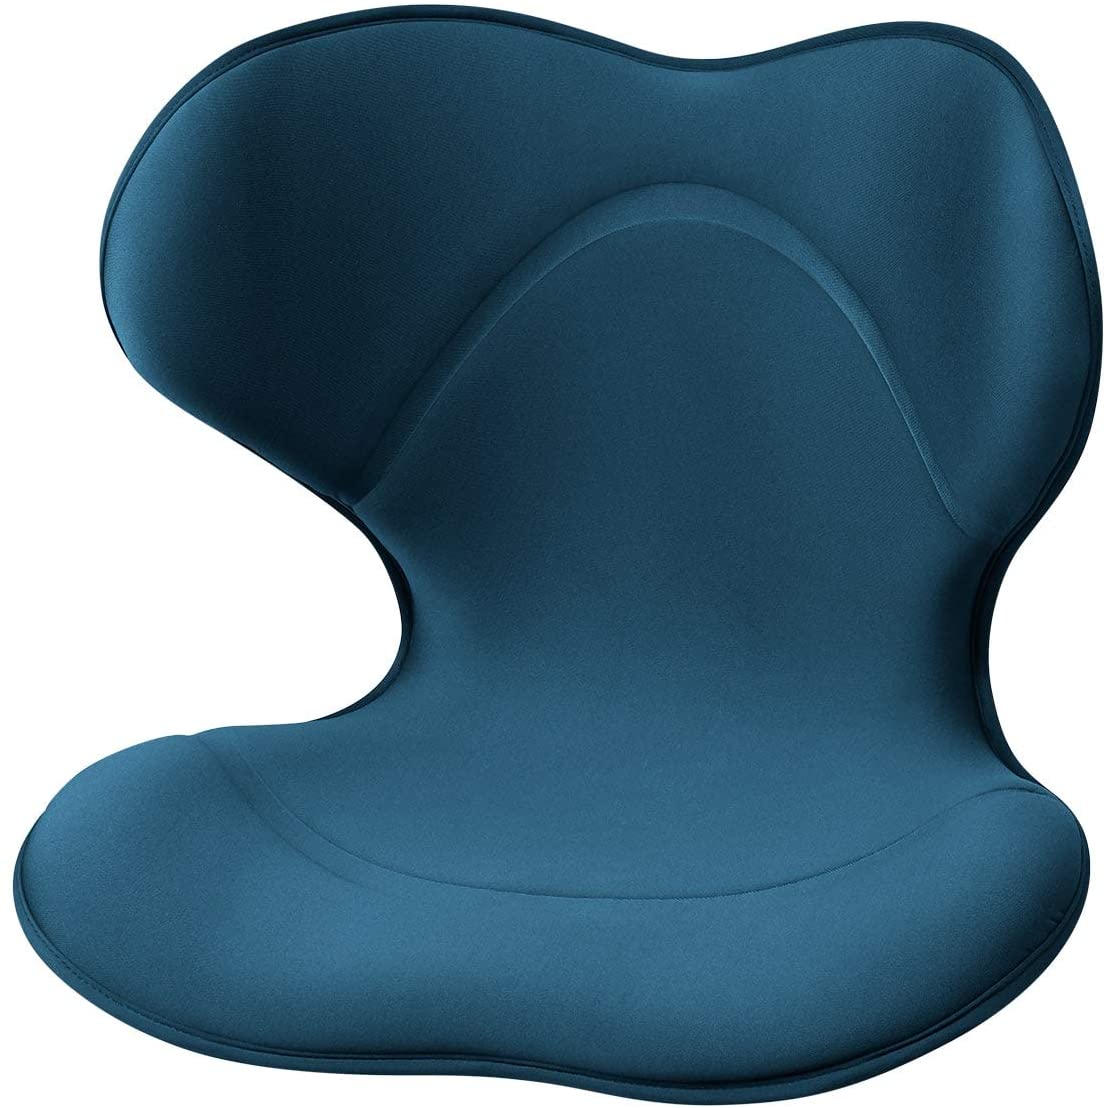 座椅子 | 座椅子 整体師 推奨 健康 ストレッチ座椅子 ブルー